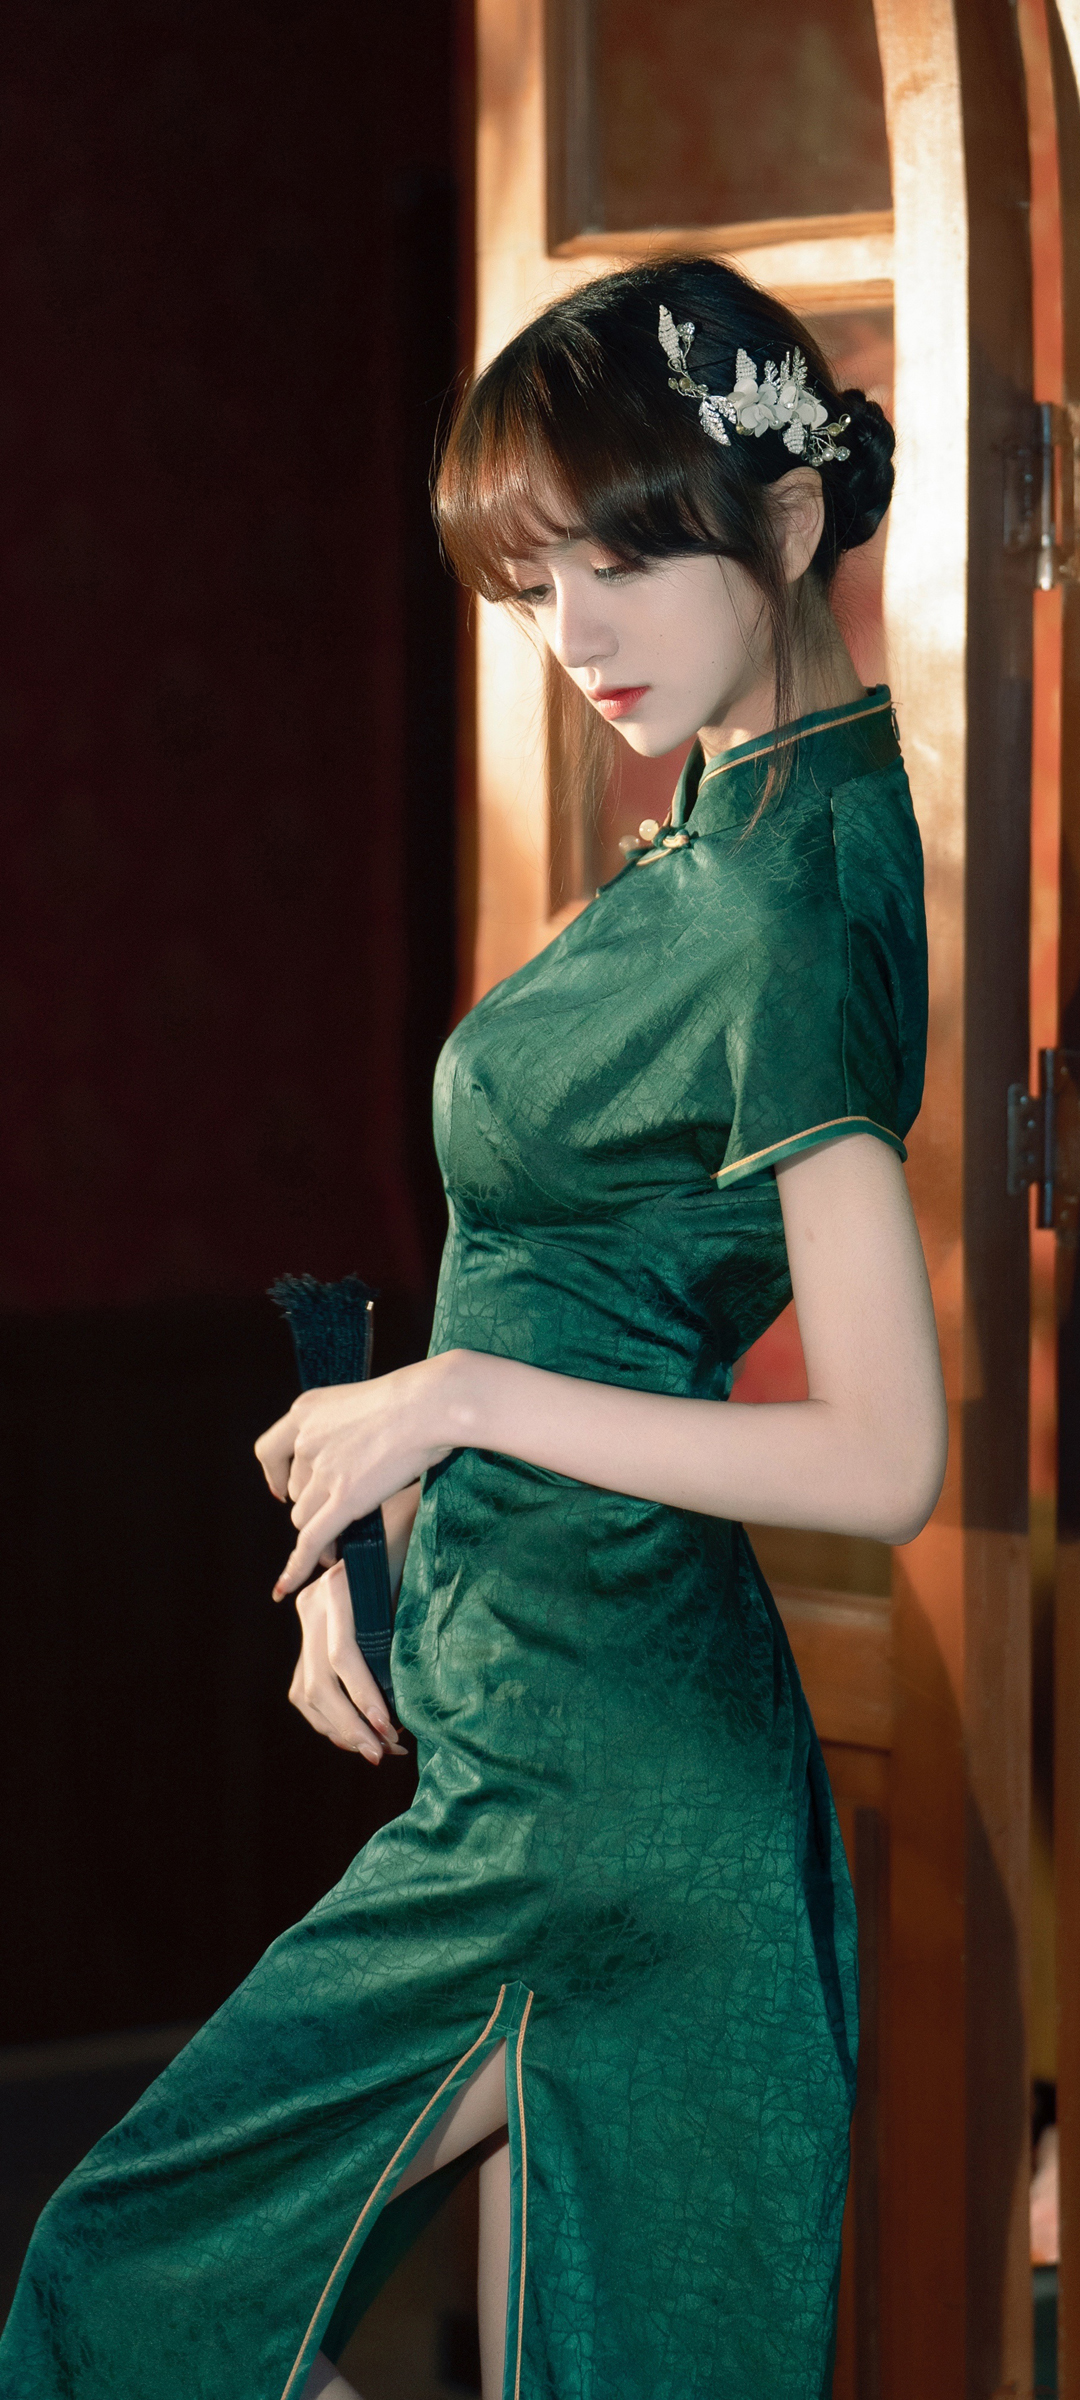 藤原由纪 绿色旗袍美女 养眼身材美腿美女手机壁纸